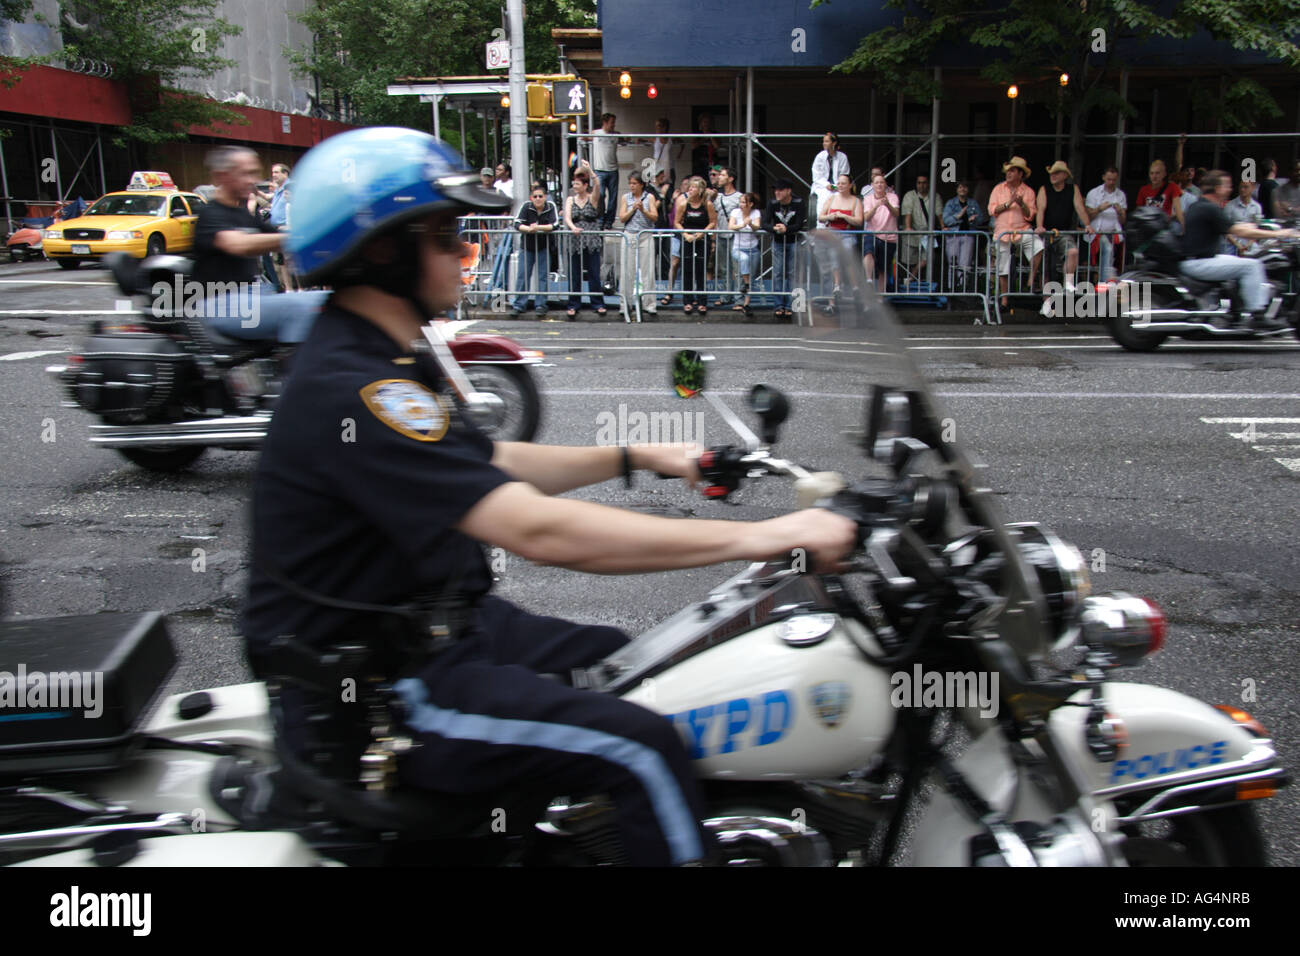 gay motorcycle cop escort